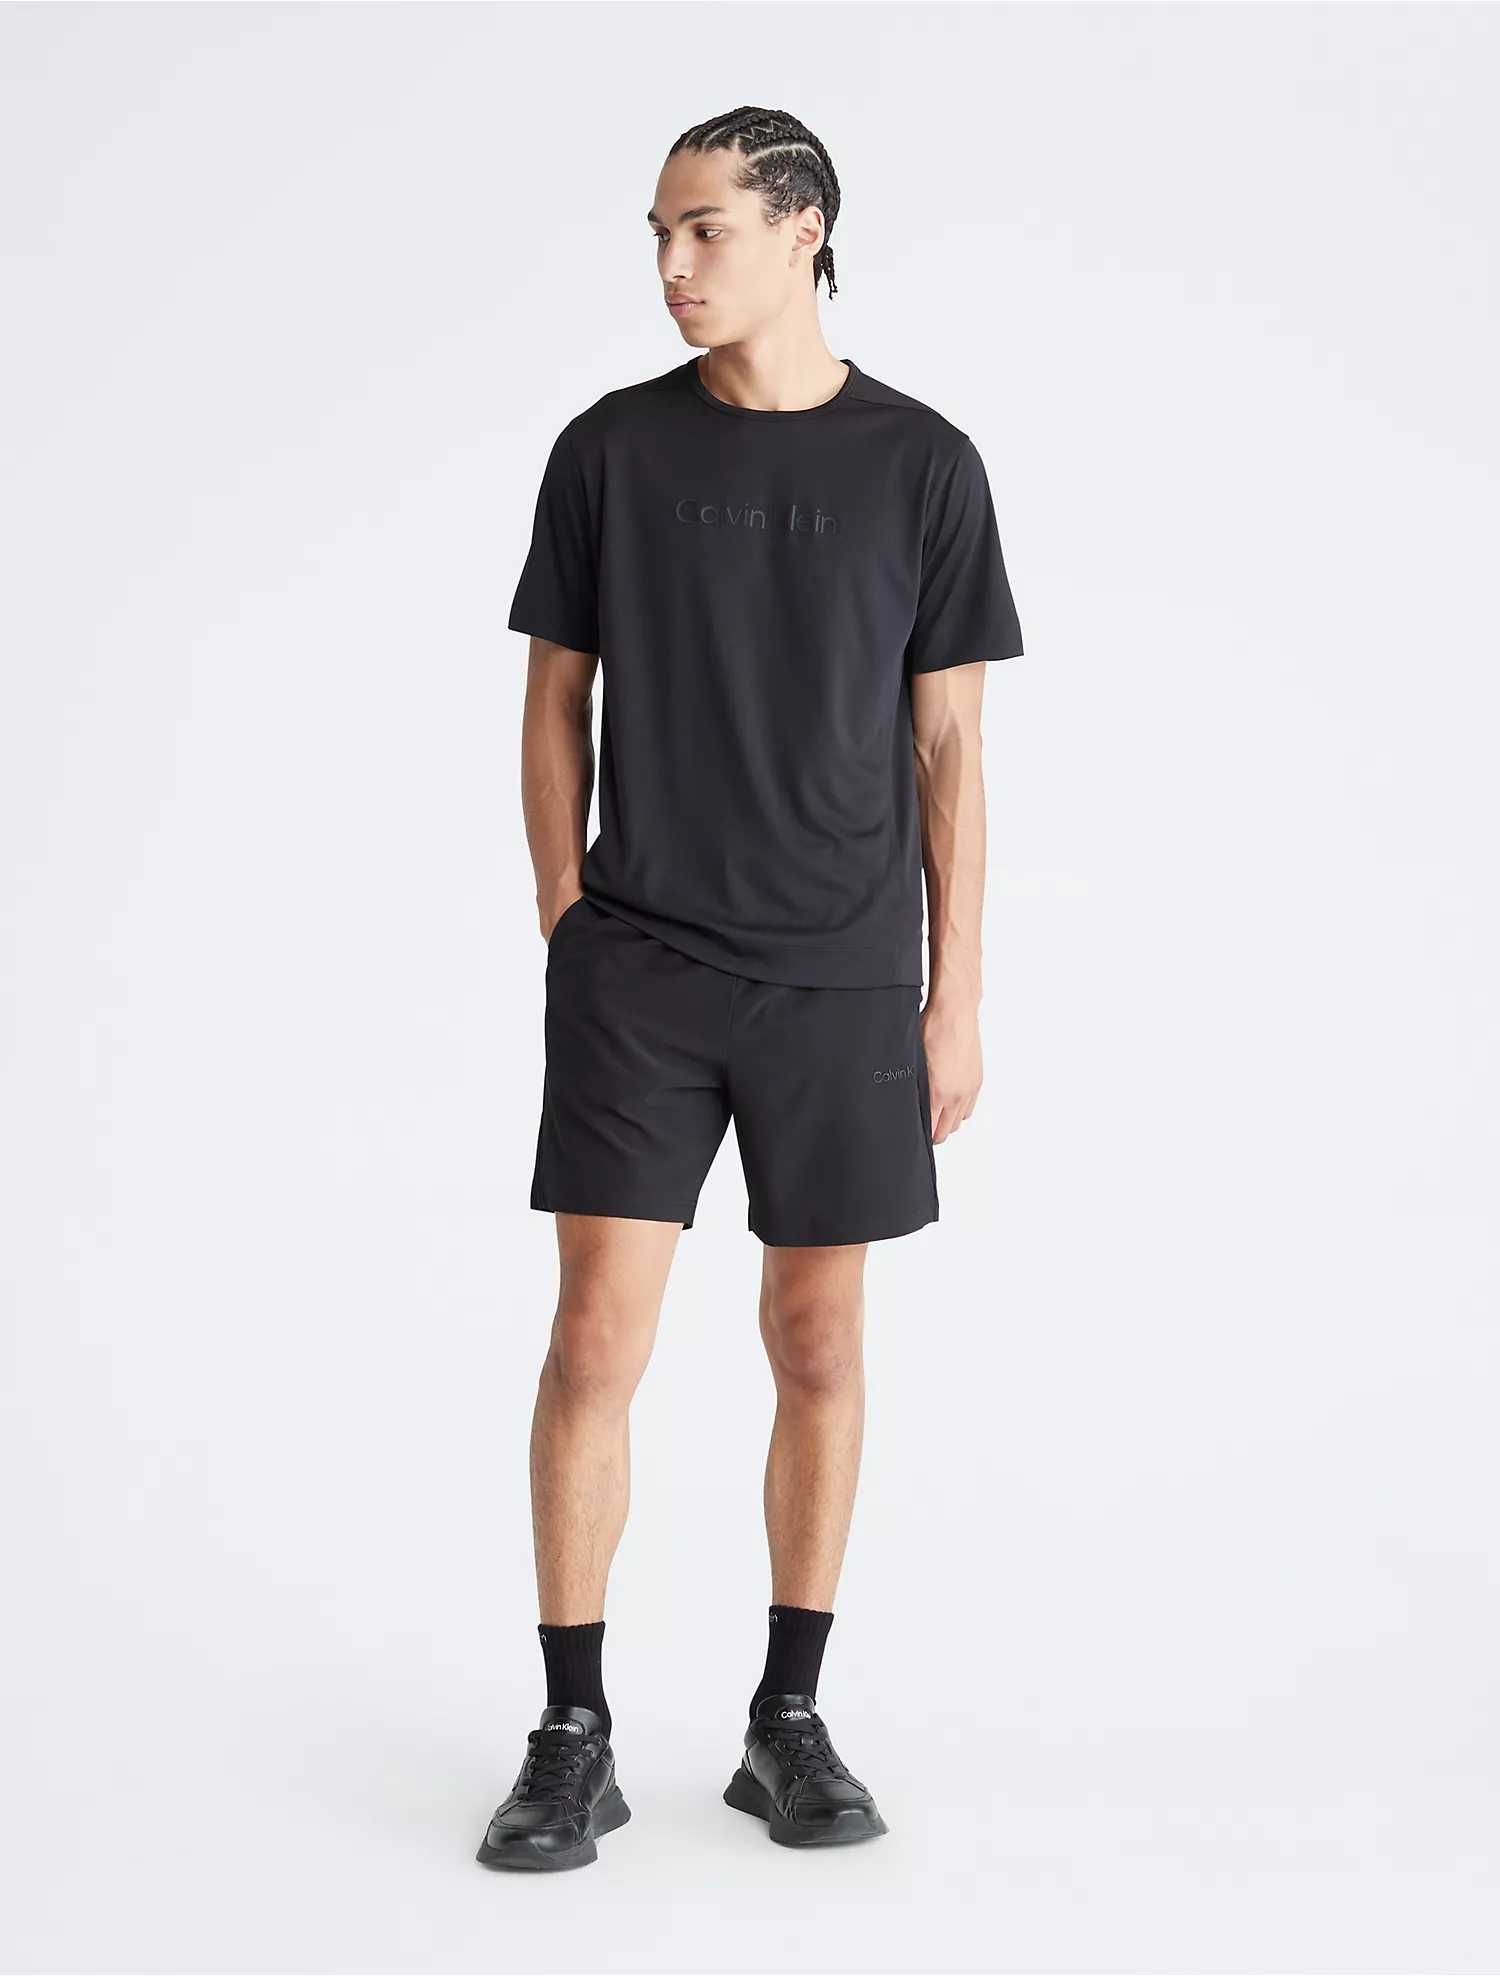 Новые шорты calvin klein (ck sport essentials woven shorts)с америки L